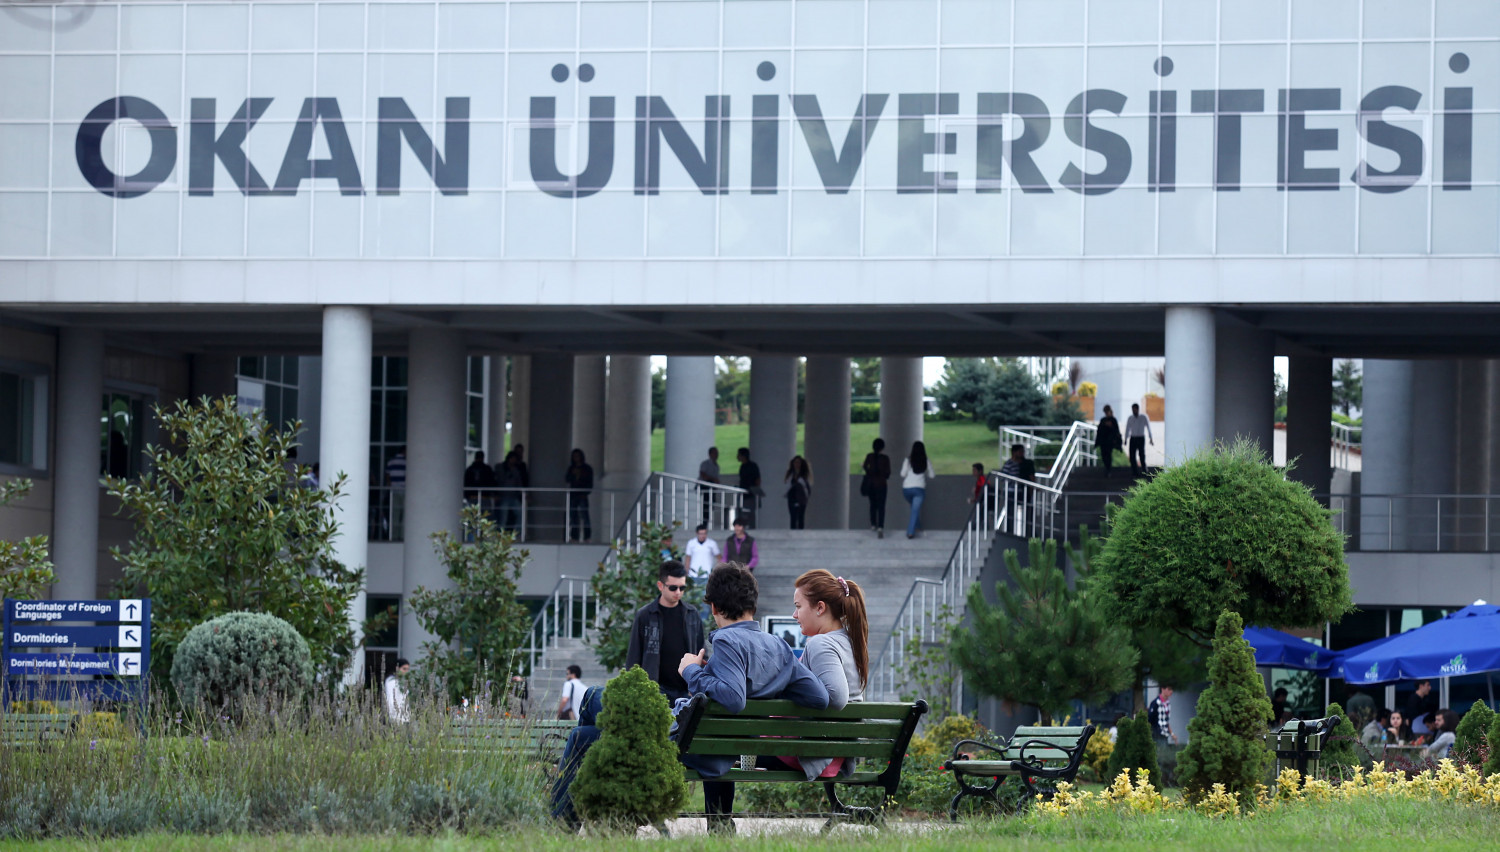 حرم جامعة أوكان